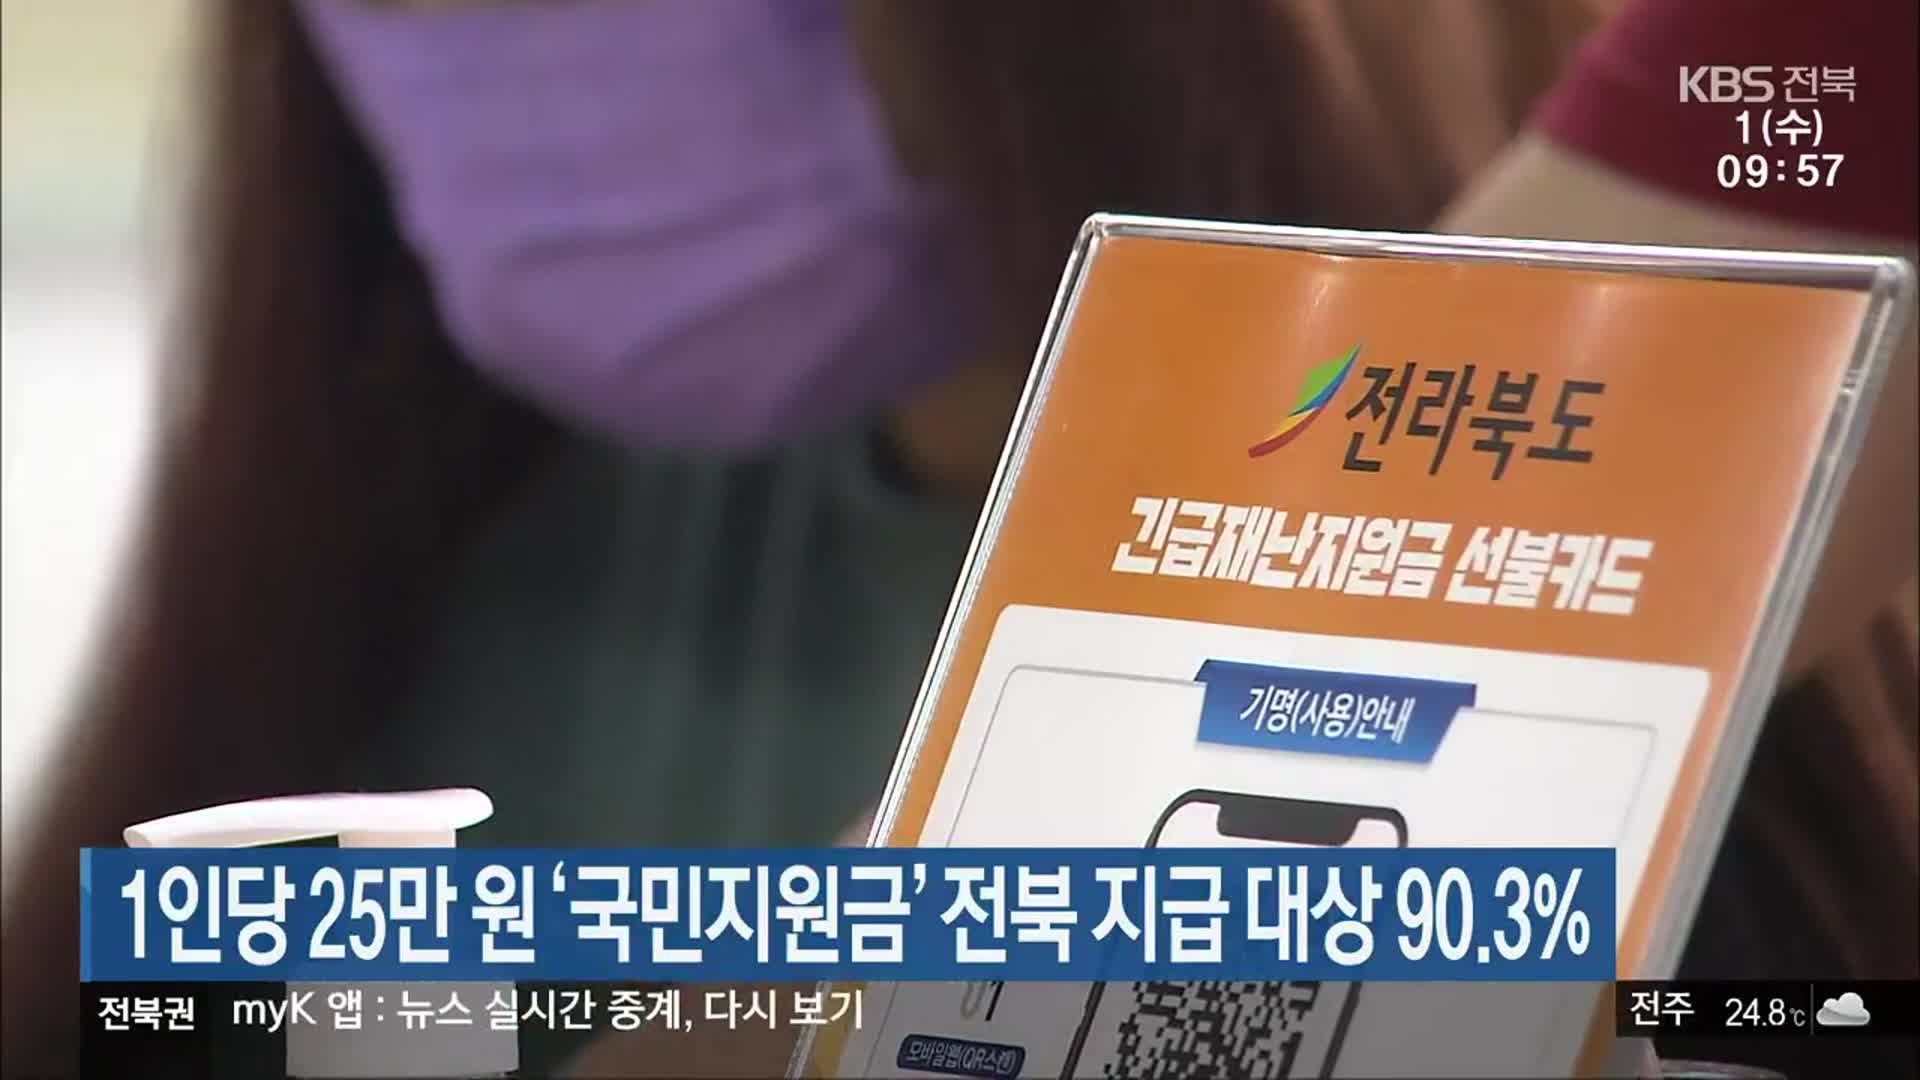 1인당 25만 원 ‘국민지원금’ 전북 지급 대상 90.3% 